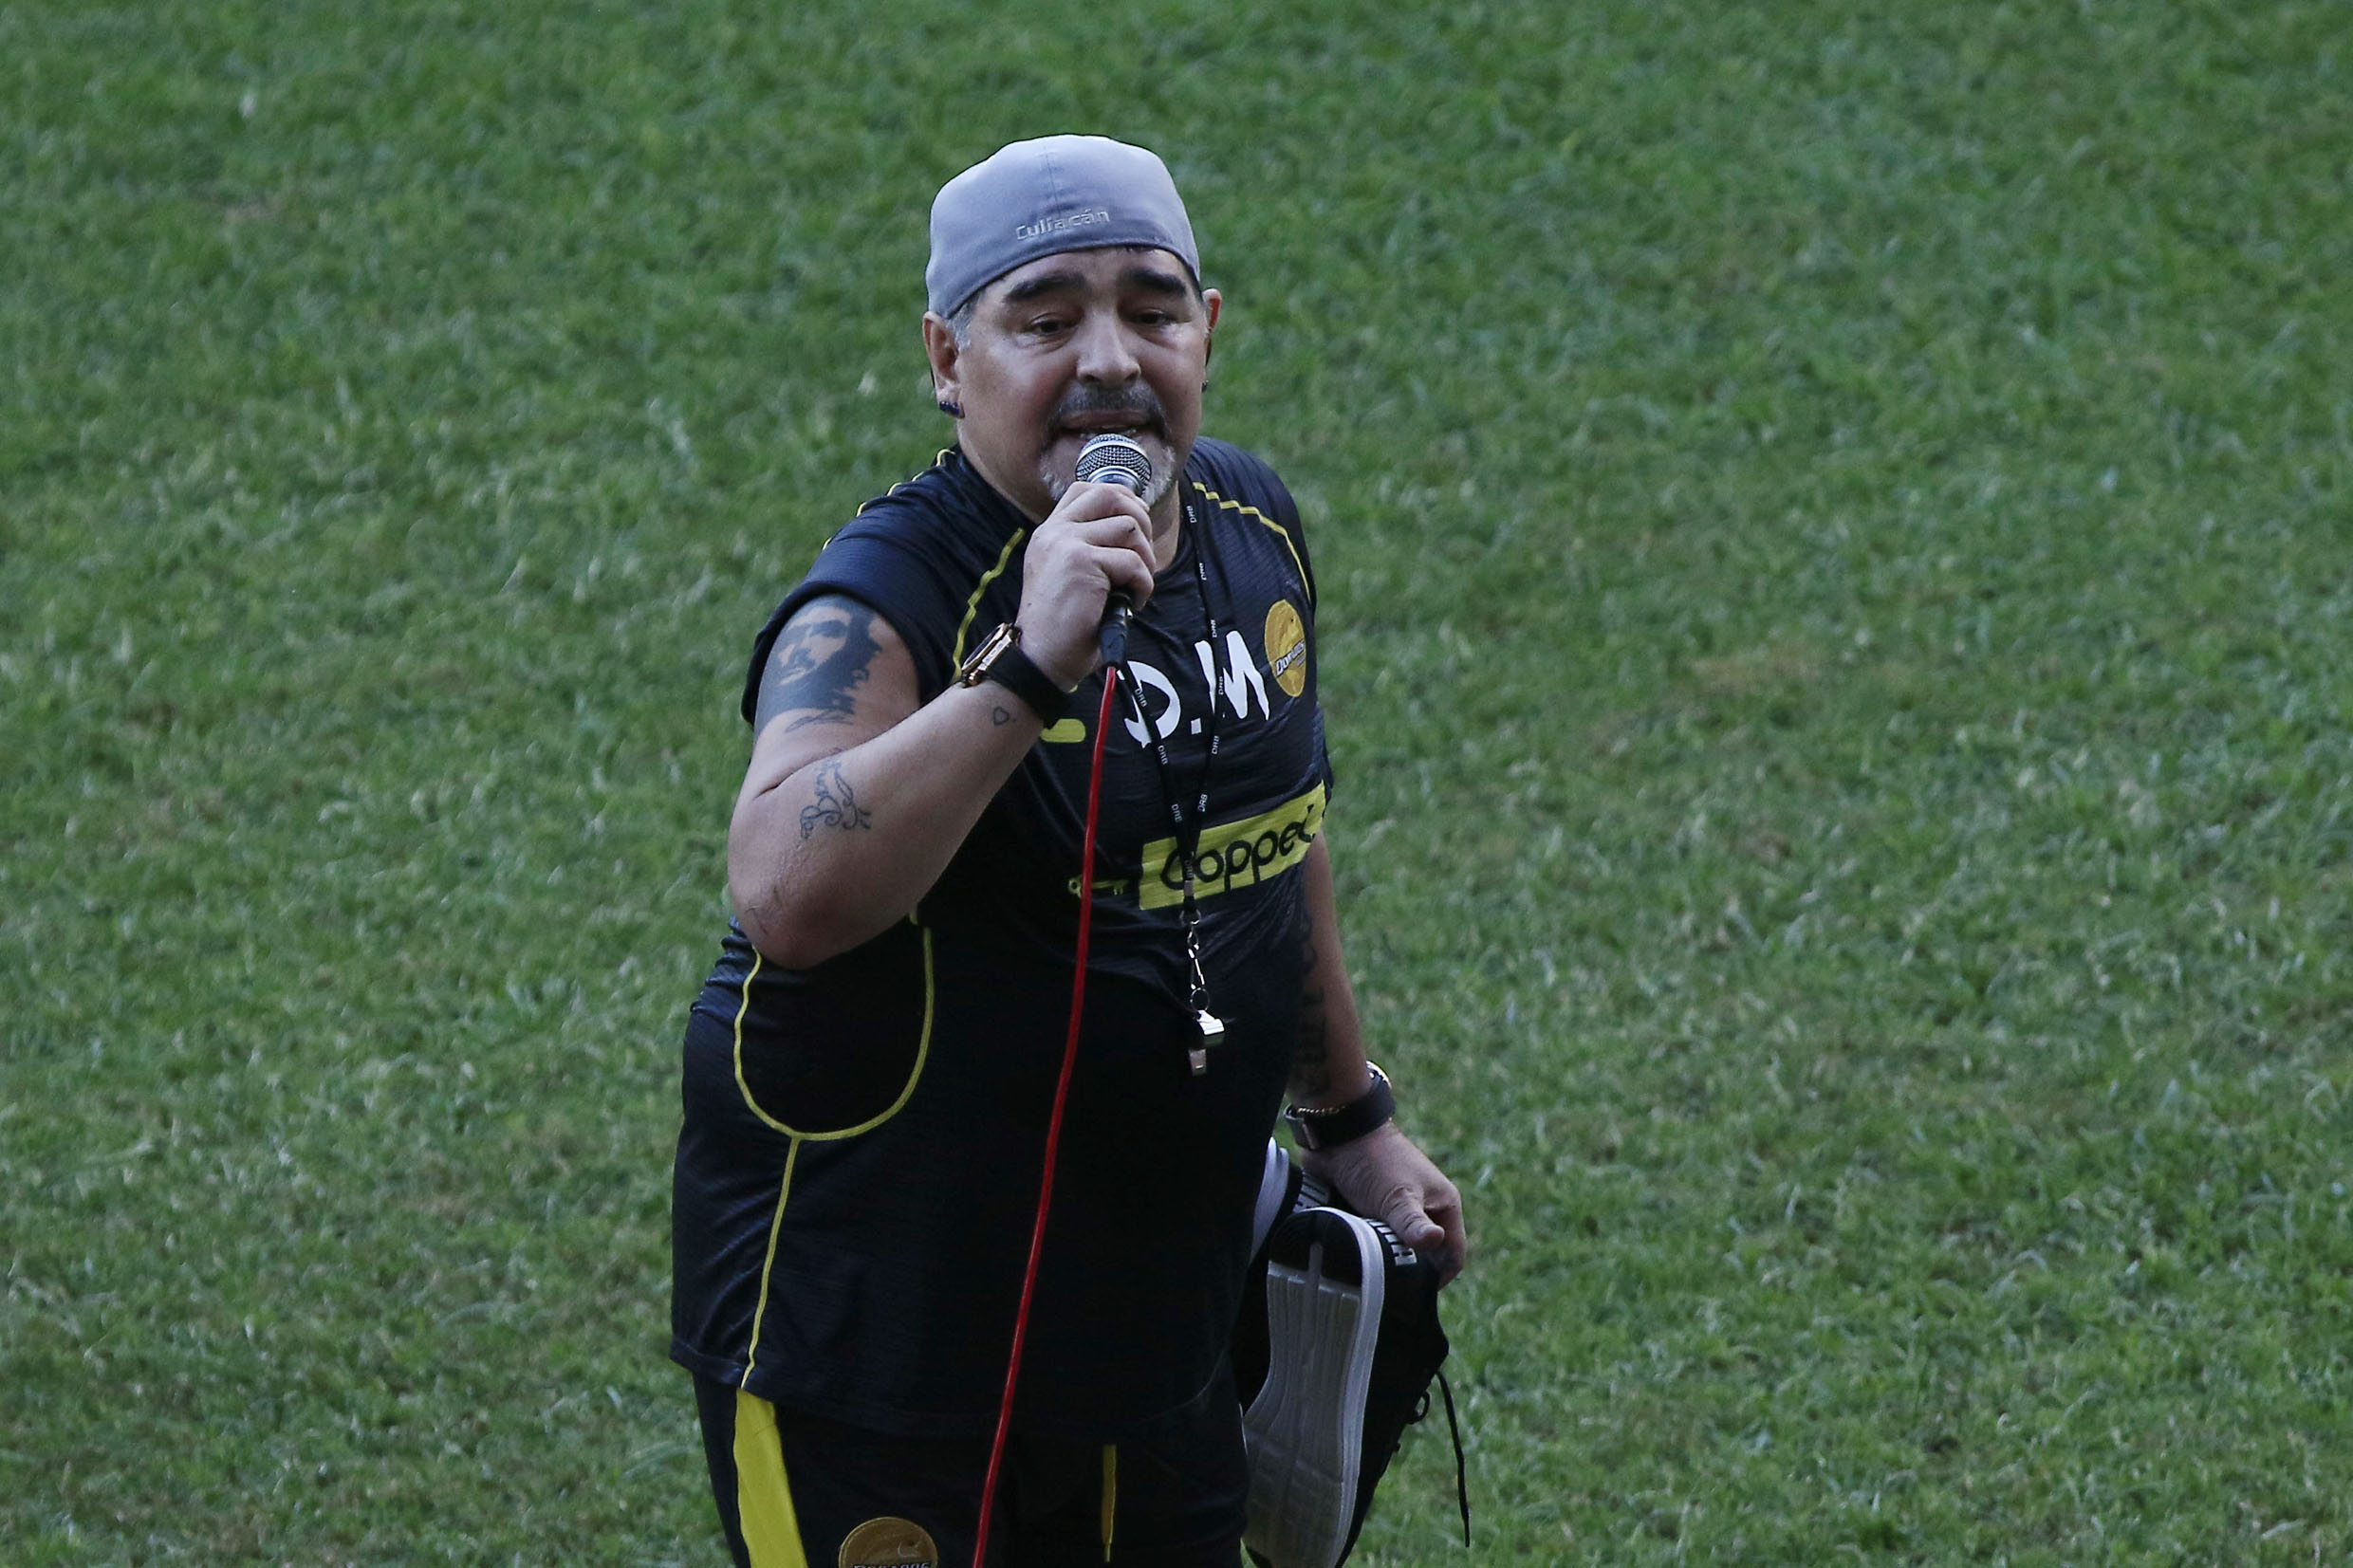 Crean corrido de Diego Armando Maradona